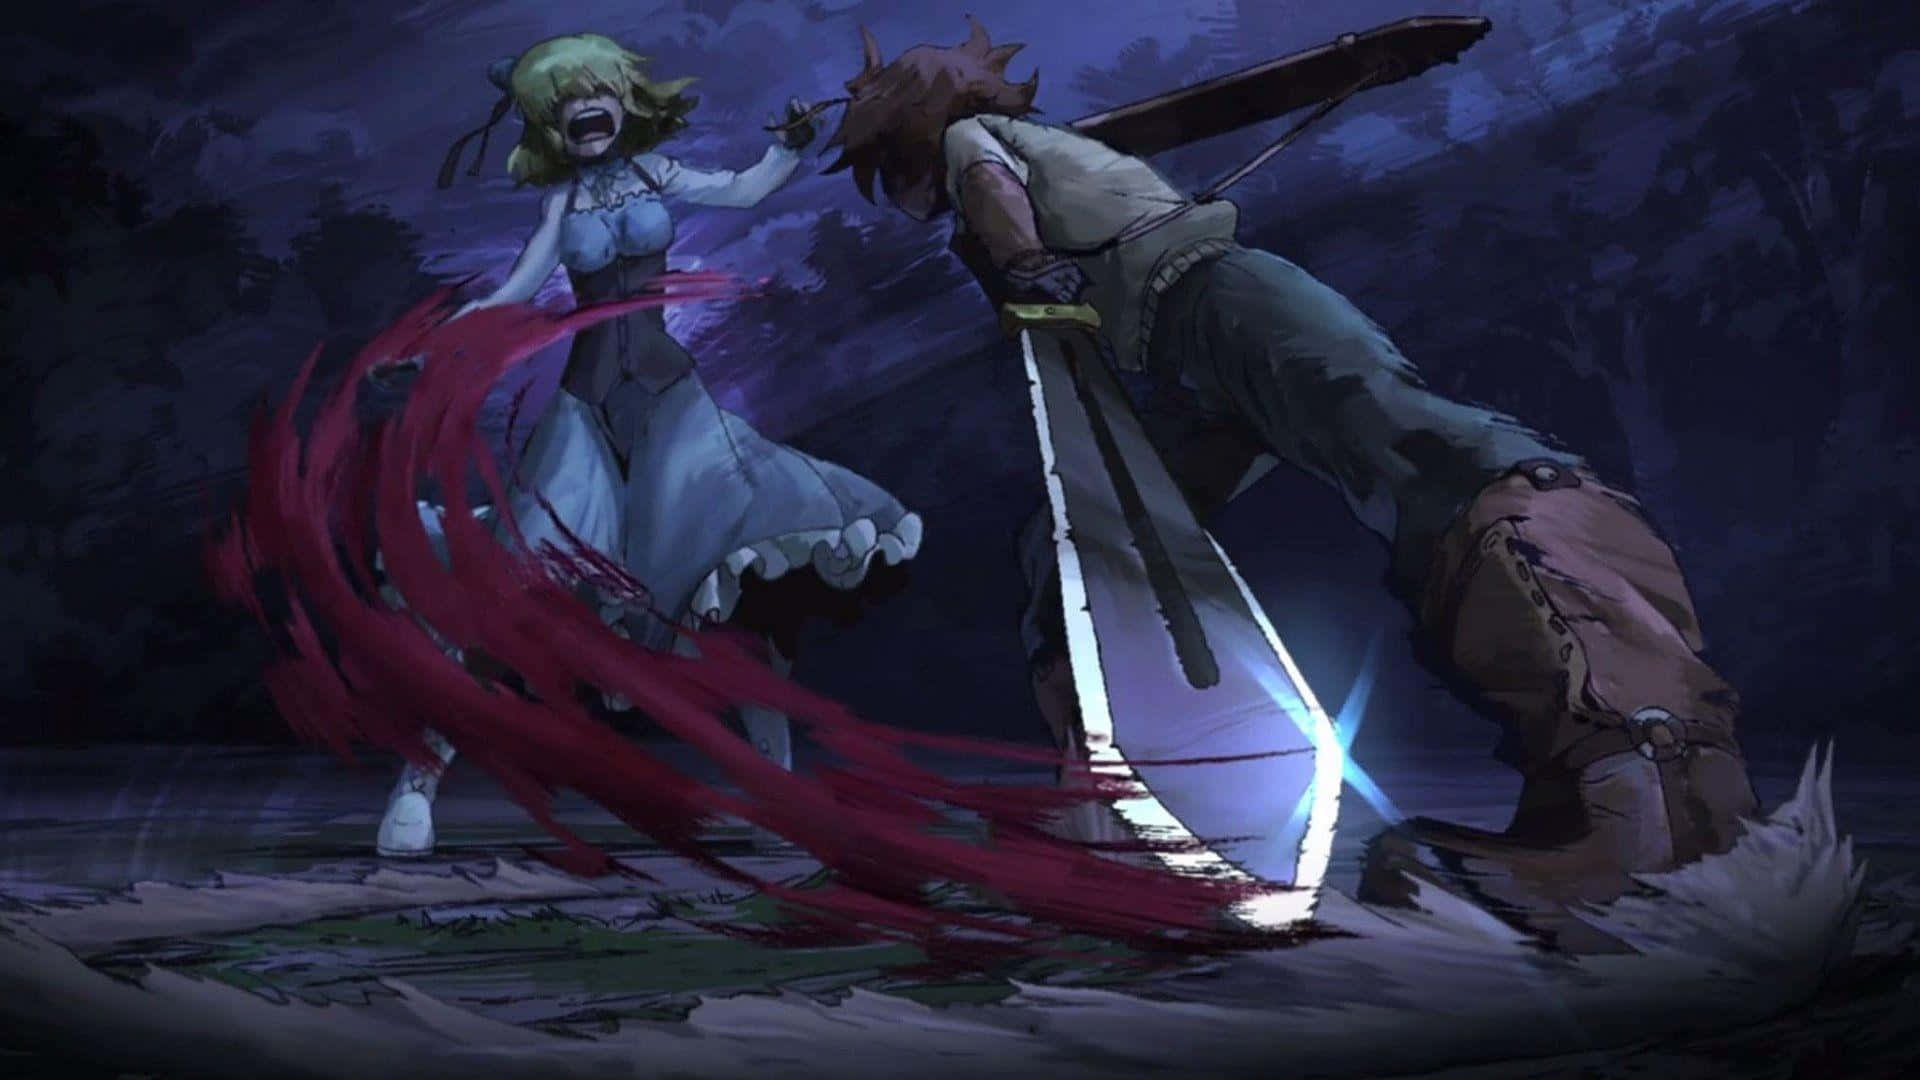 Luchapor La Justicia En El Oscuro Y Caótico Mundo Del Anime Akame Ga Kill.